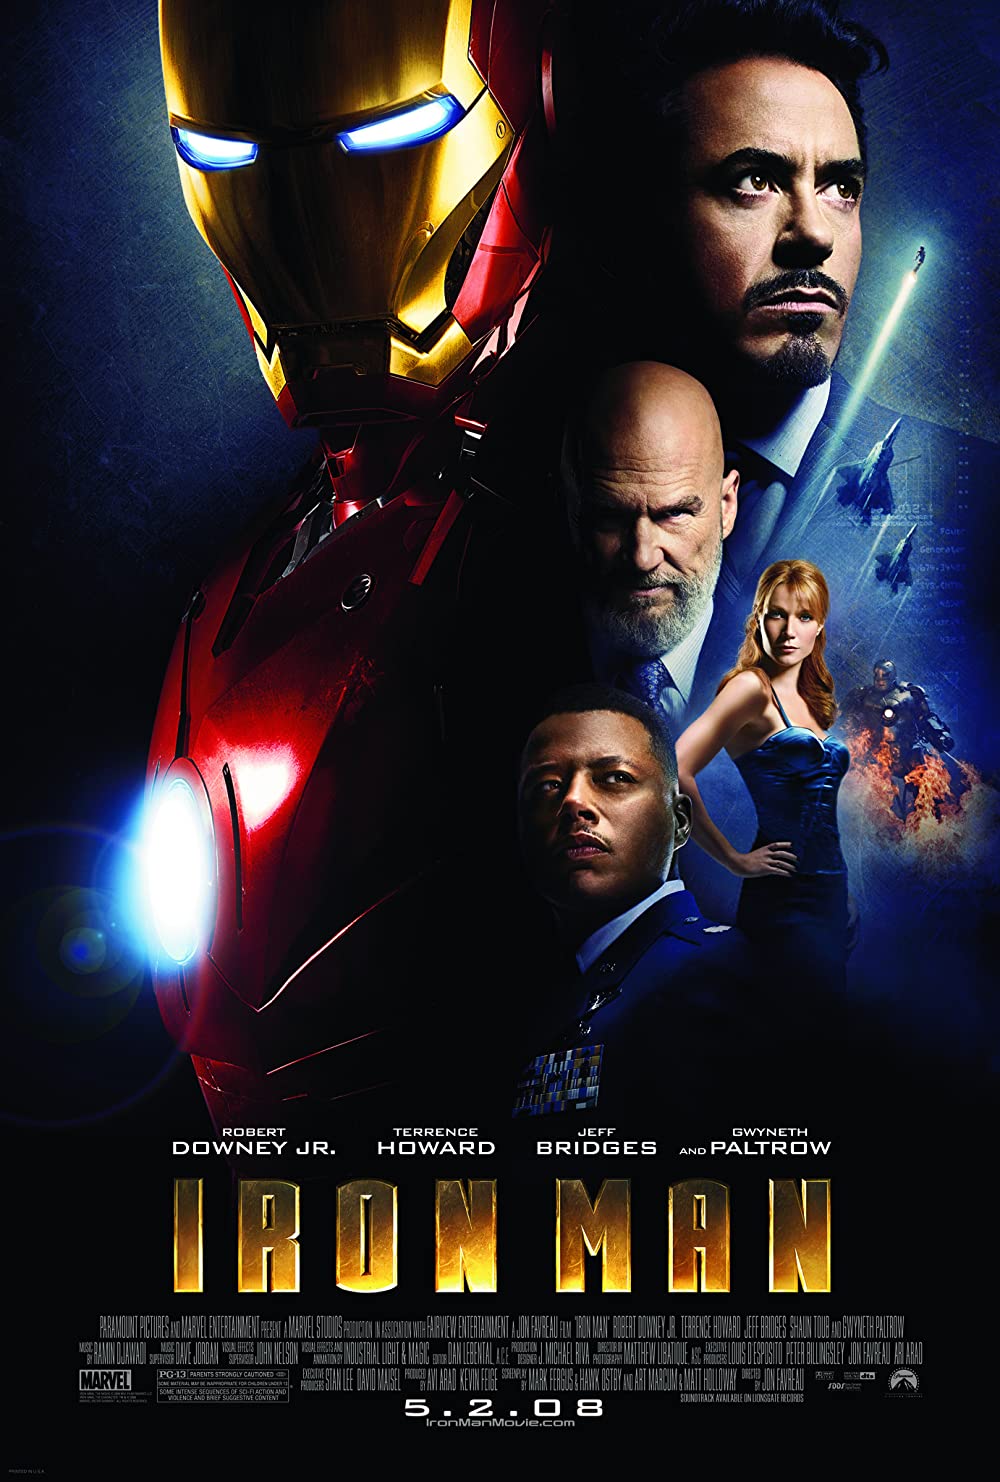 Filmbeschreibung zu Iron Man